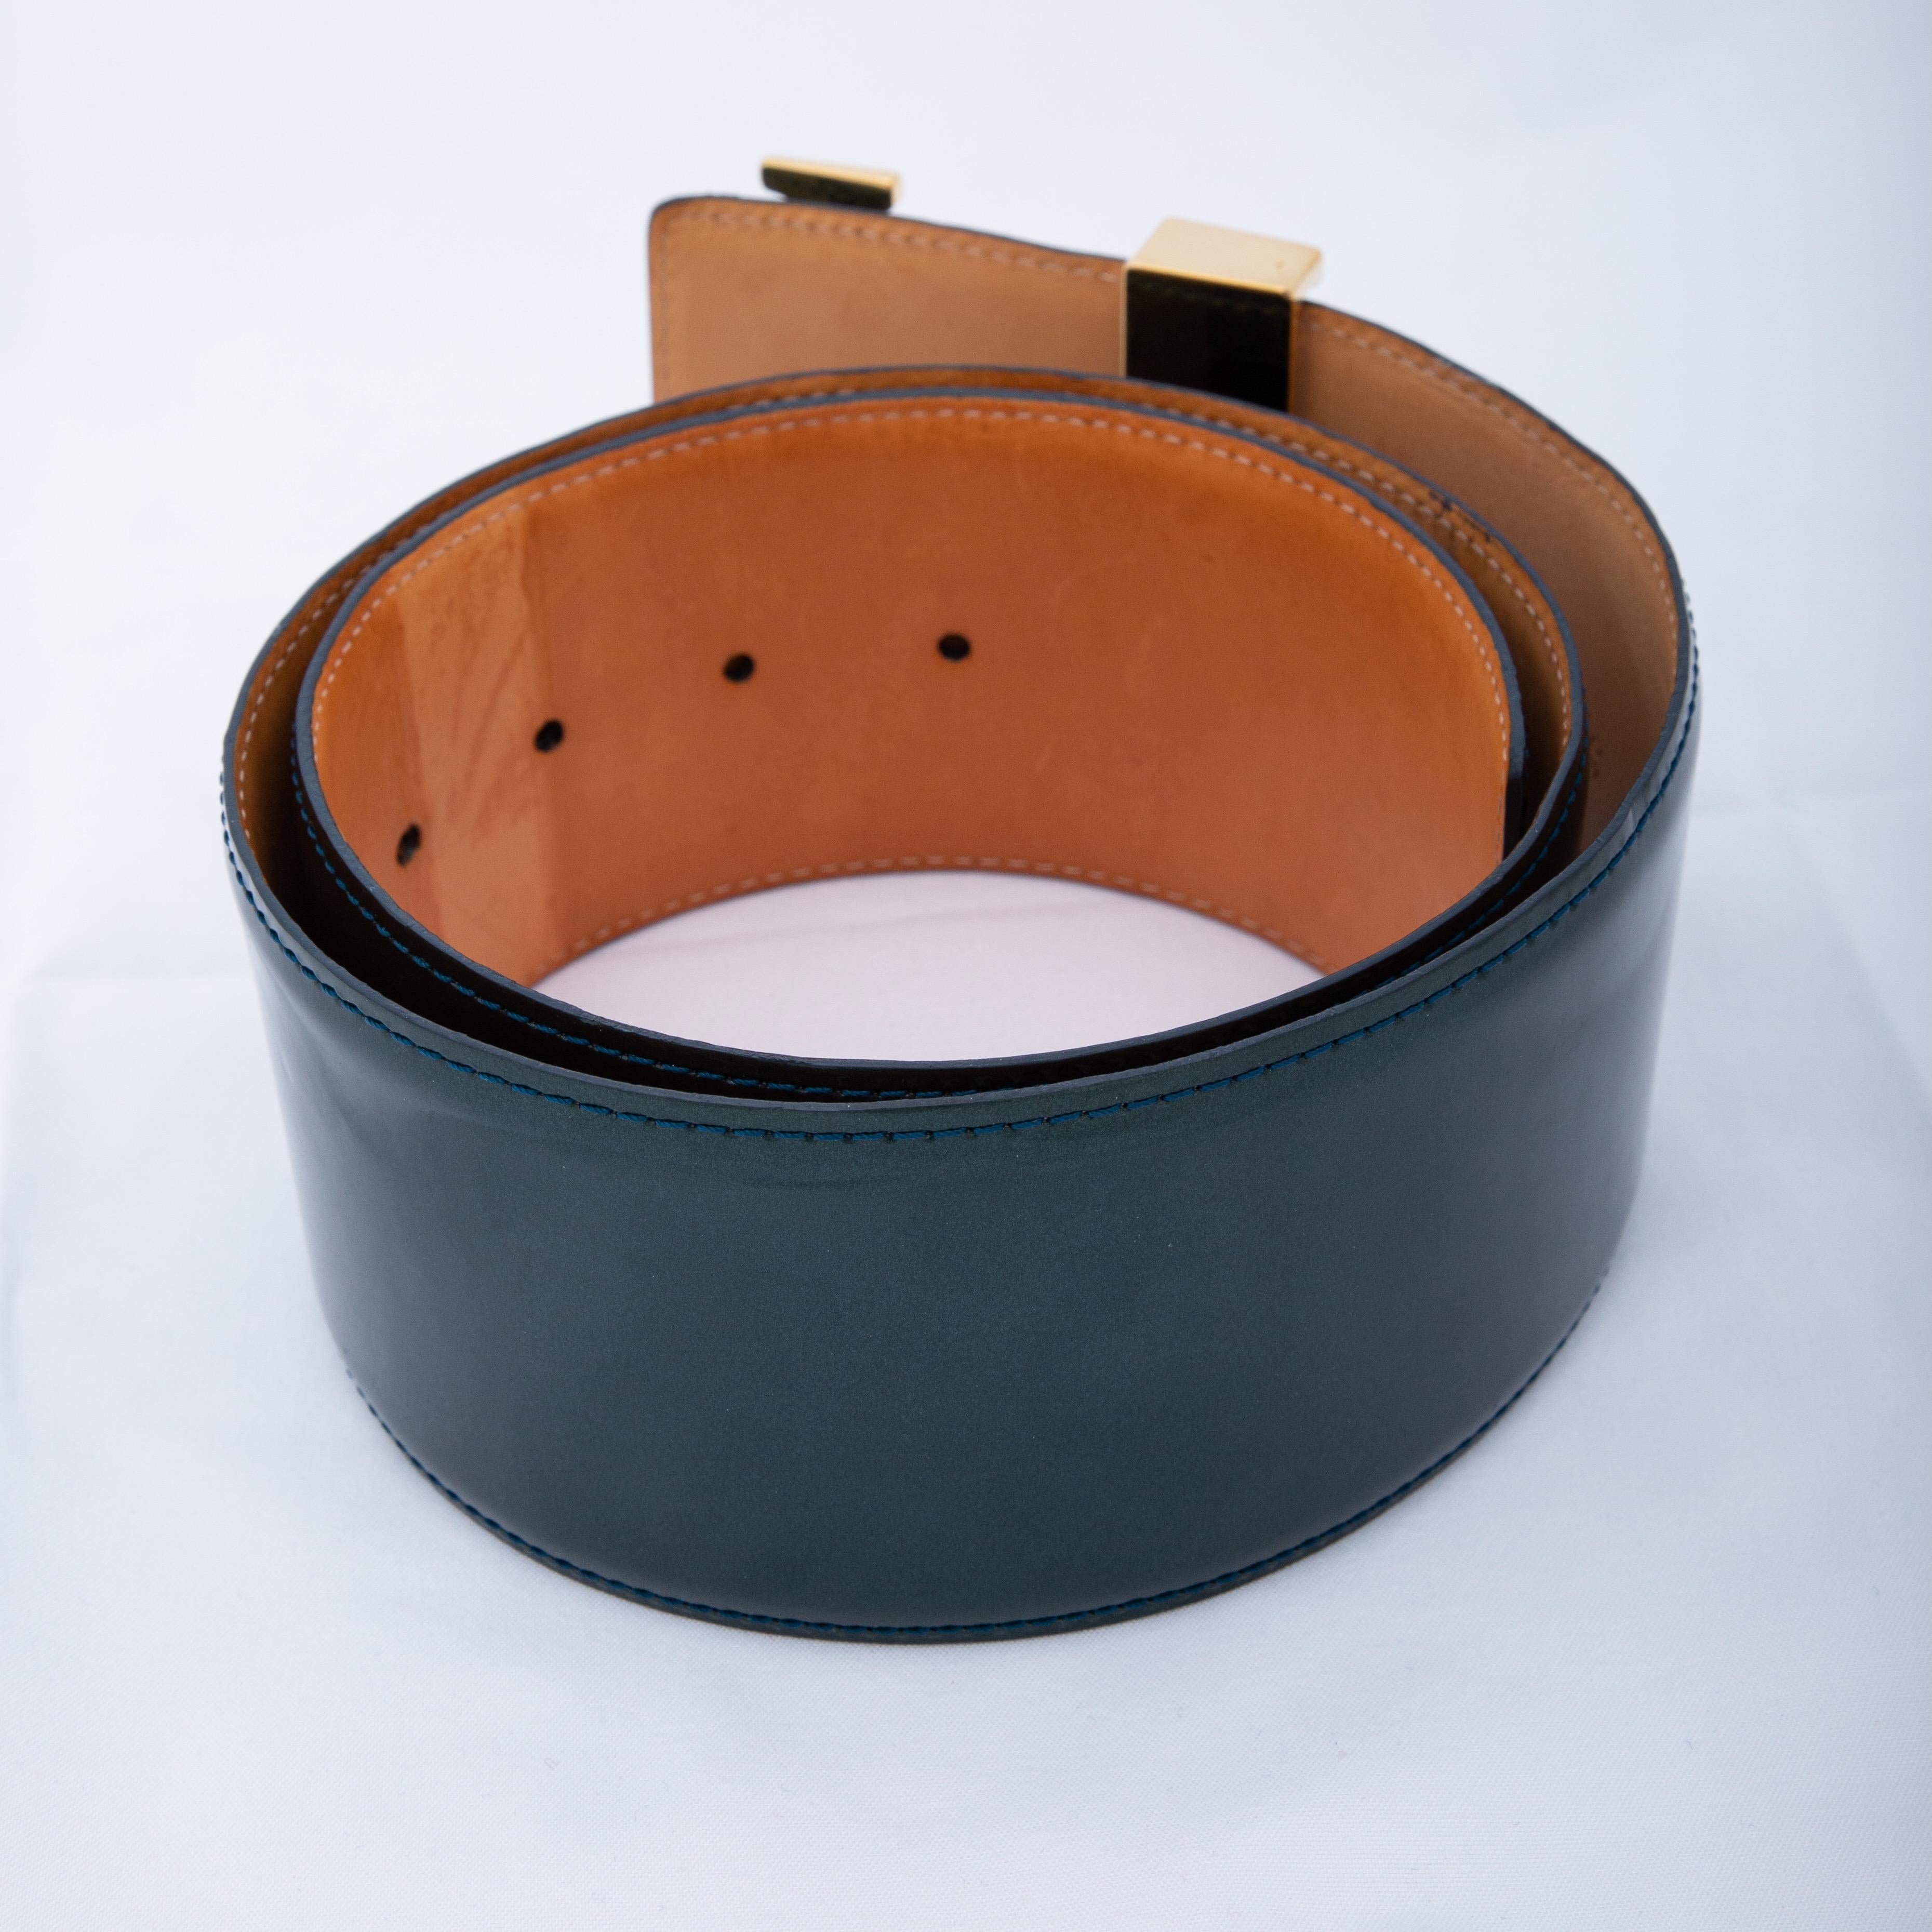 Cette ceinture est fabriquée en cuir vernis Louis Vuitton Vernis de couleur vert foncé. La ceinture comporte une grande boucle à logo en ton or et un dos en cuir vachette. La ceinture est de 2009.

COULEUR : Vert foncé
MATERIAL : Cuir verni
CODE